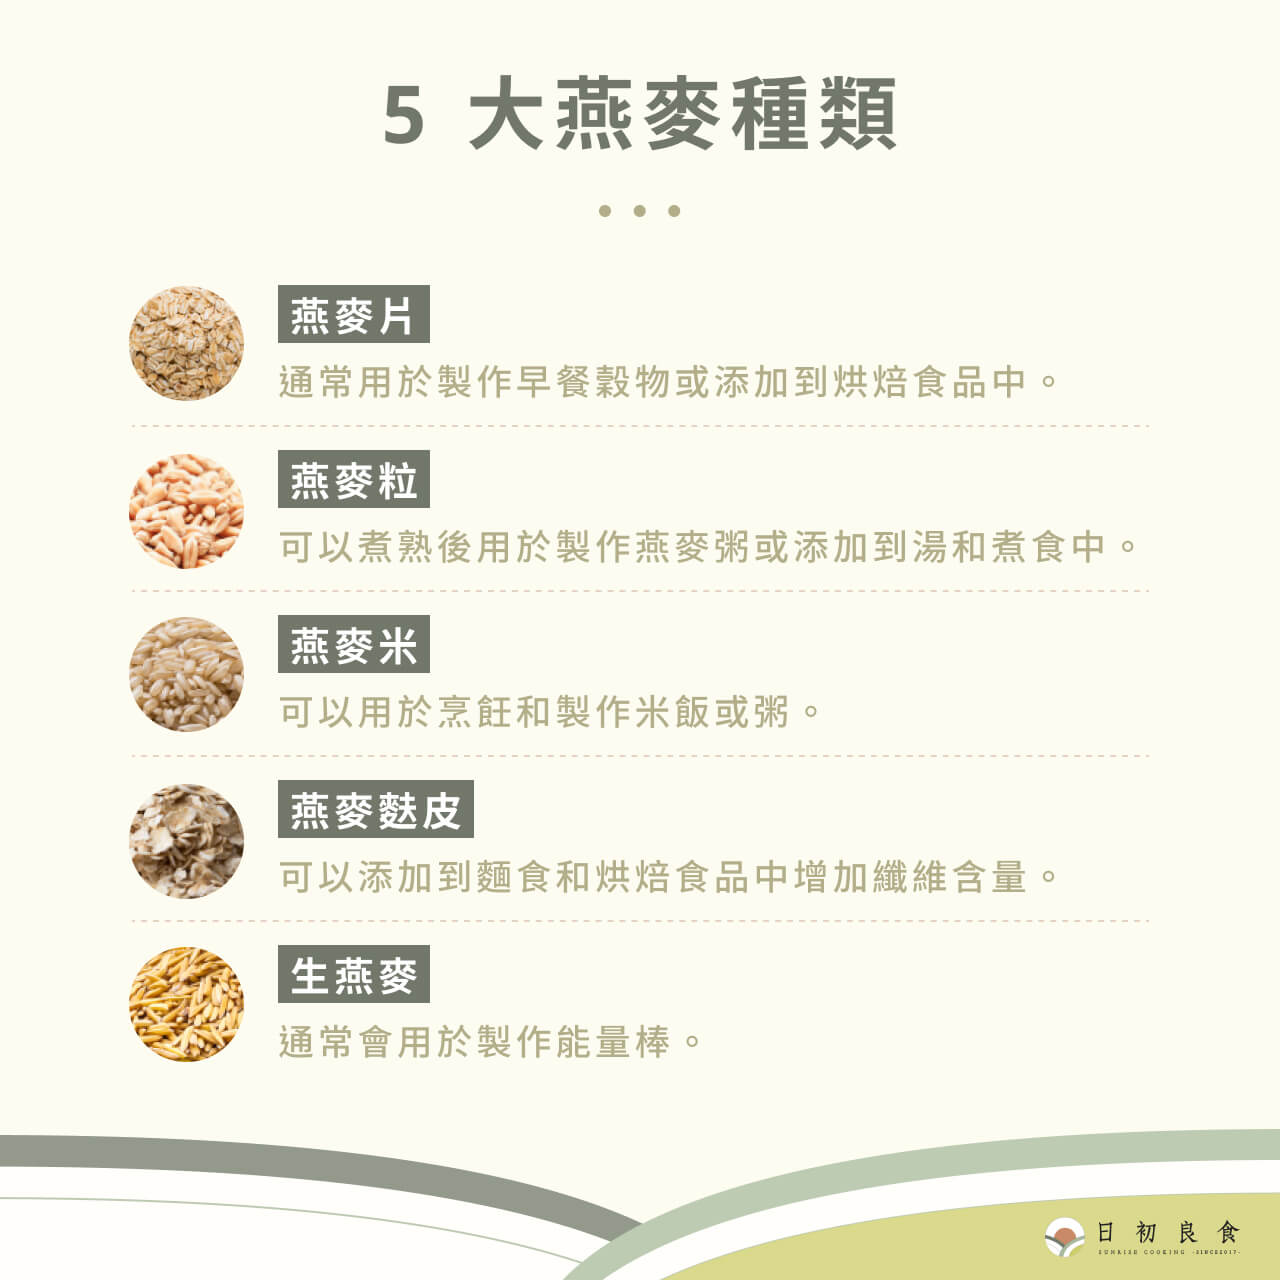 5 大燕麥種類